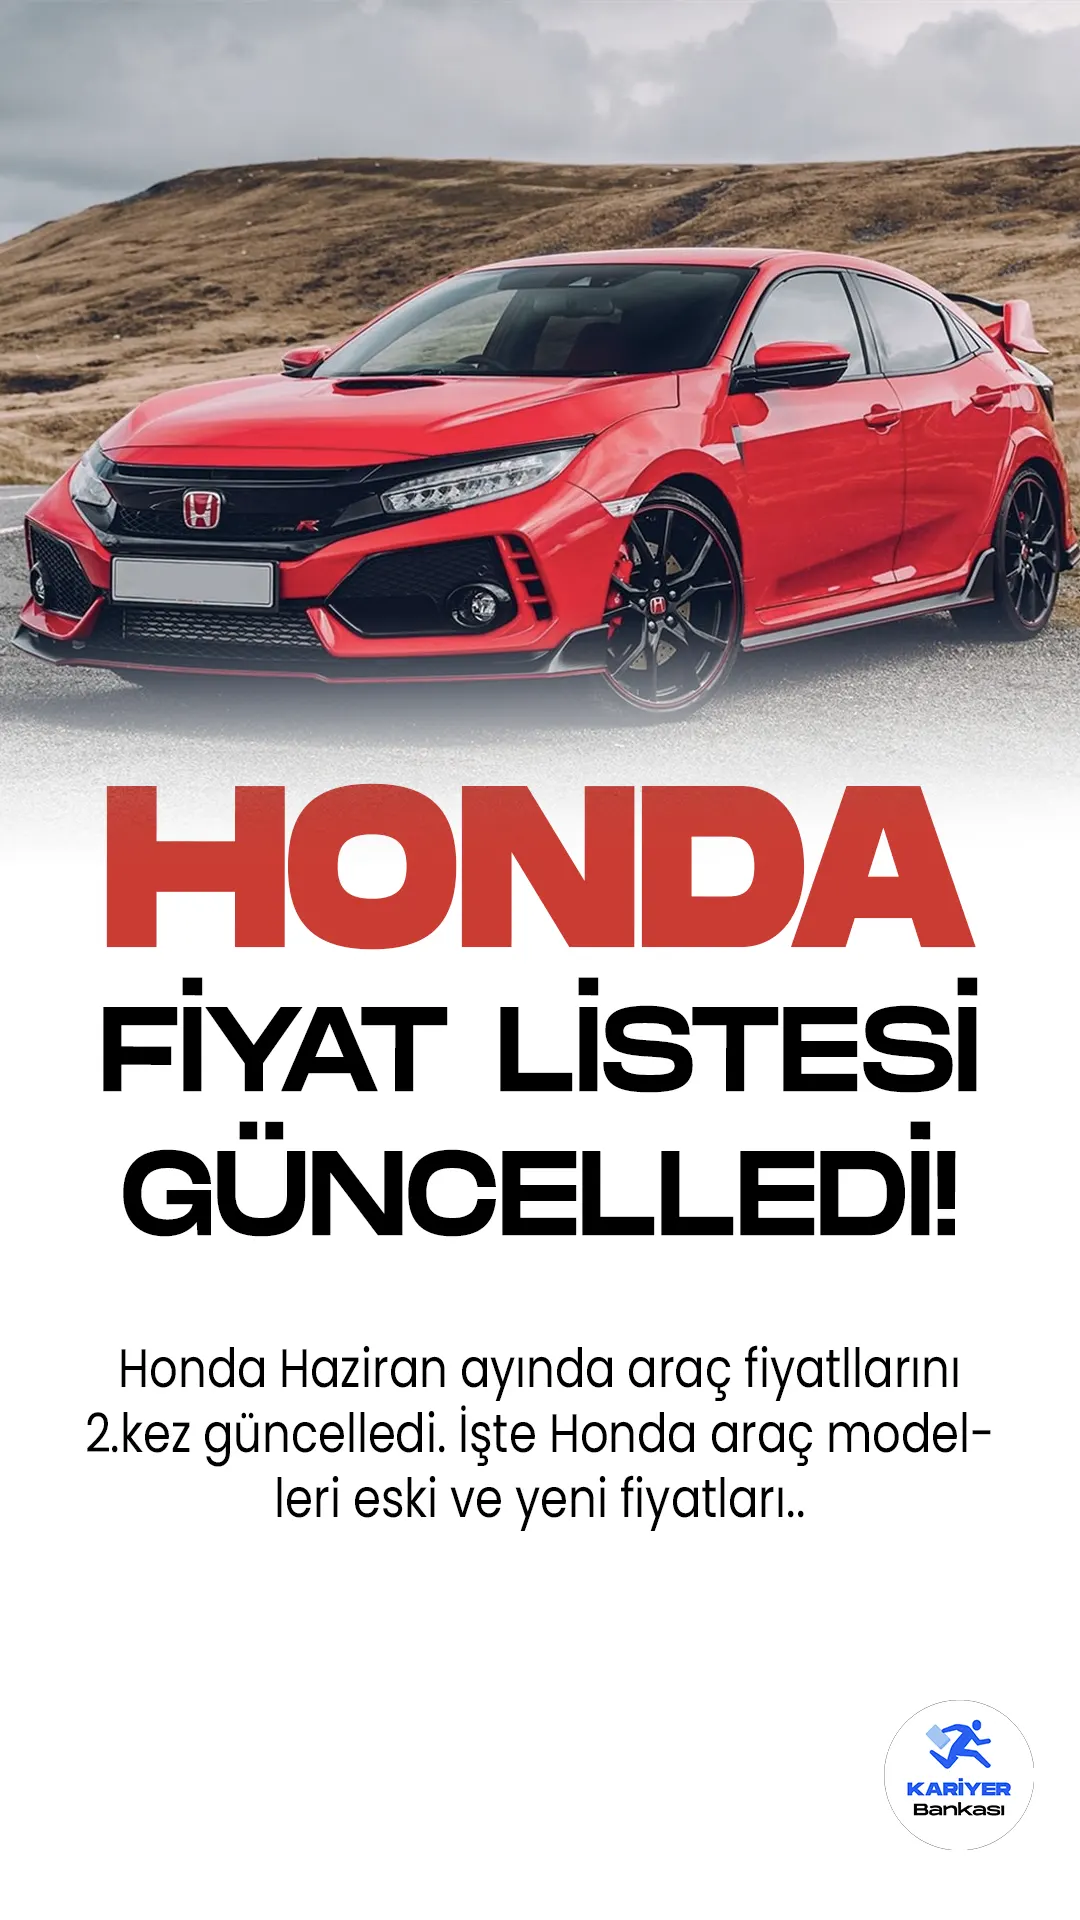 Honda Haziran 2023 Fiyat Listesi Güncellendi! Geçtiğimiz günlerde Haziran ayı fiyat listesini paylaşan Honda araç markası, 1 hafta içinde fiyat listelerini 2.kez güncelledi.